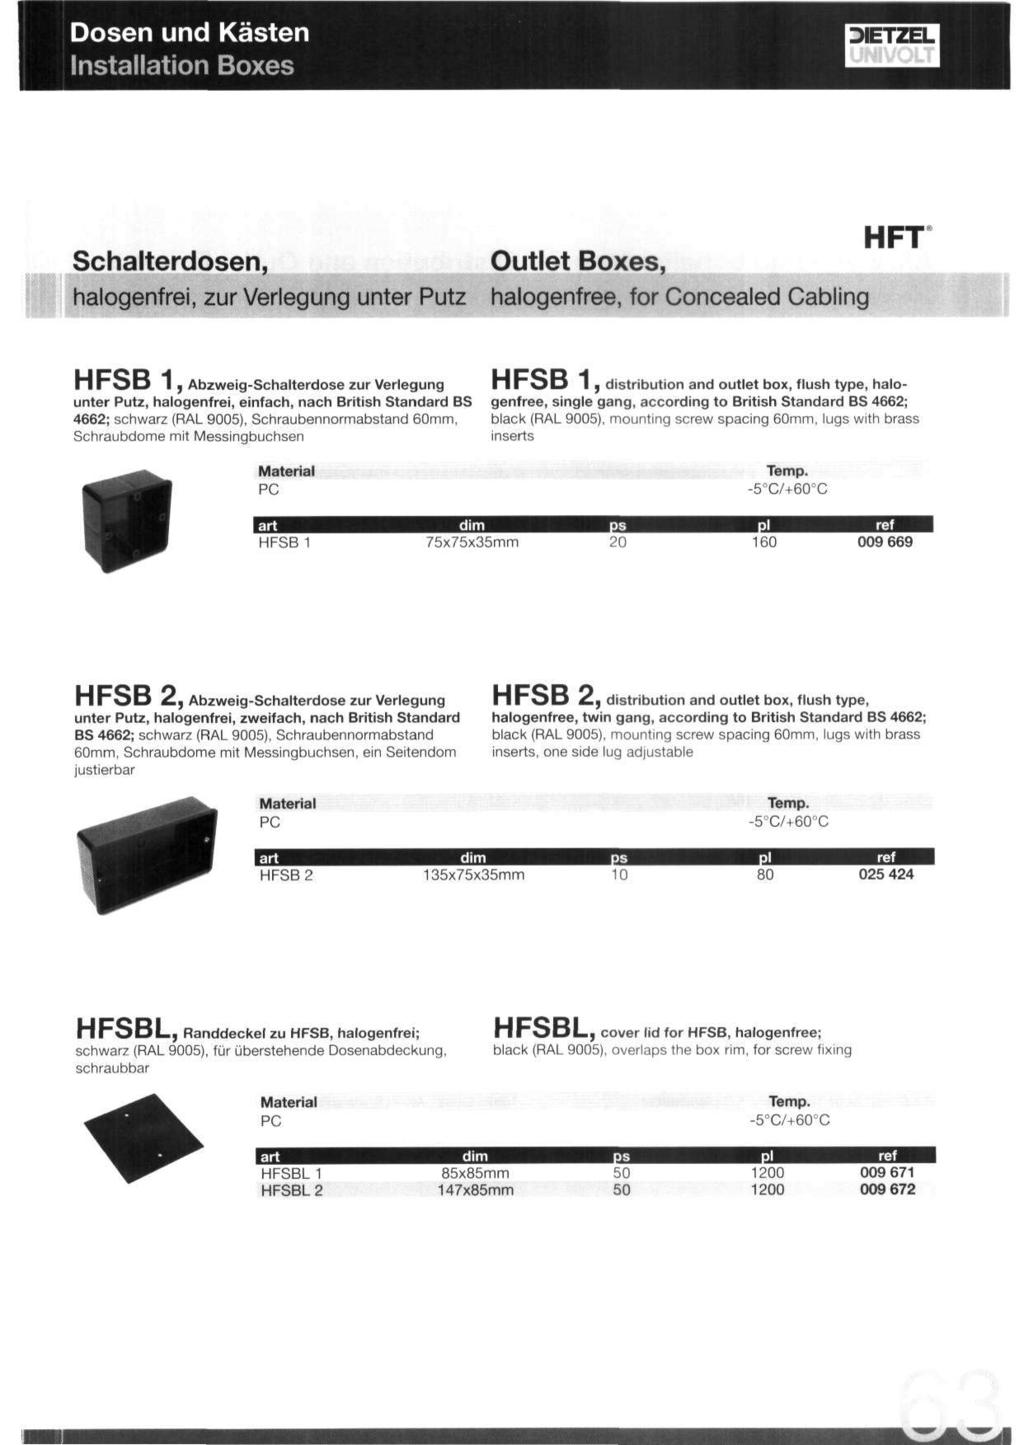 Dosen und Kasten Installation Boxes HFT Schalterdosen, Outlet Boxes, halogenfrei, zur Verlegung unter Putz halogenfree, for Concealed Cabling HFSB, AbzweigSchalterdose zur Verlegung unter Putz,